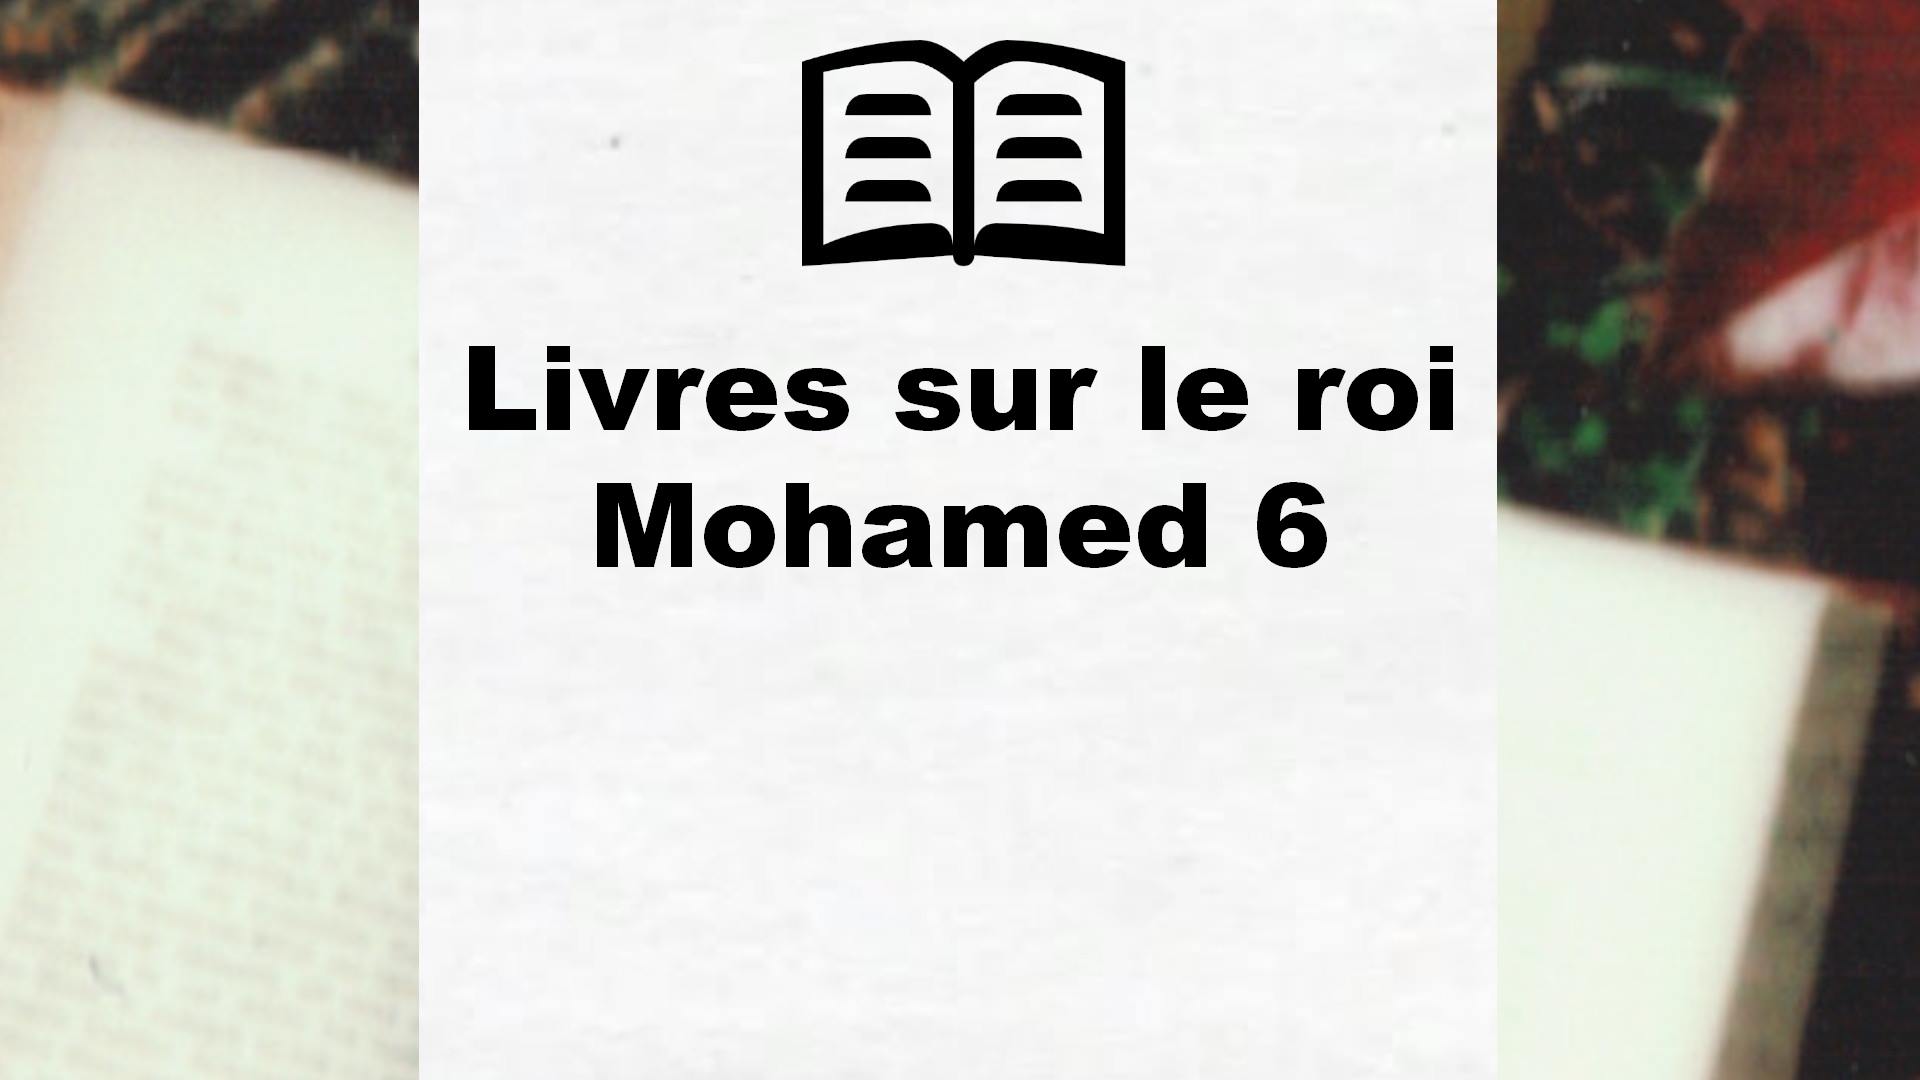 Livres sur le roi Mohamed 6